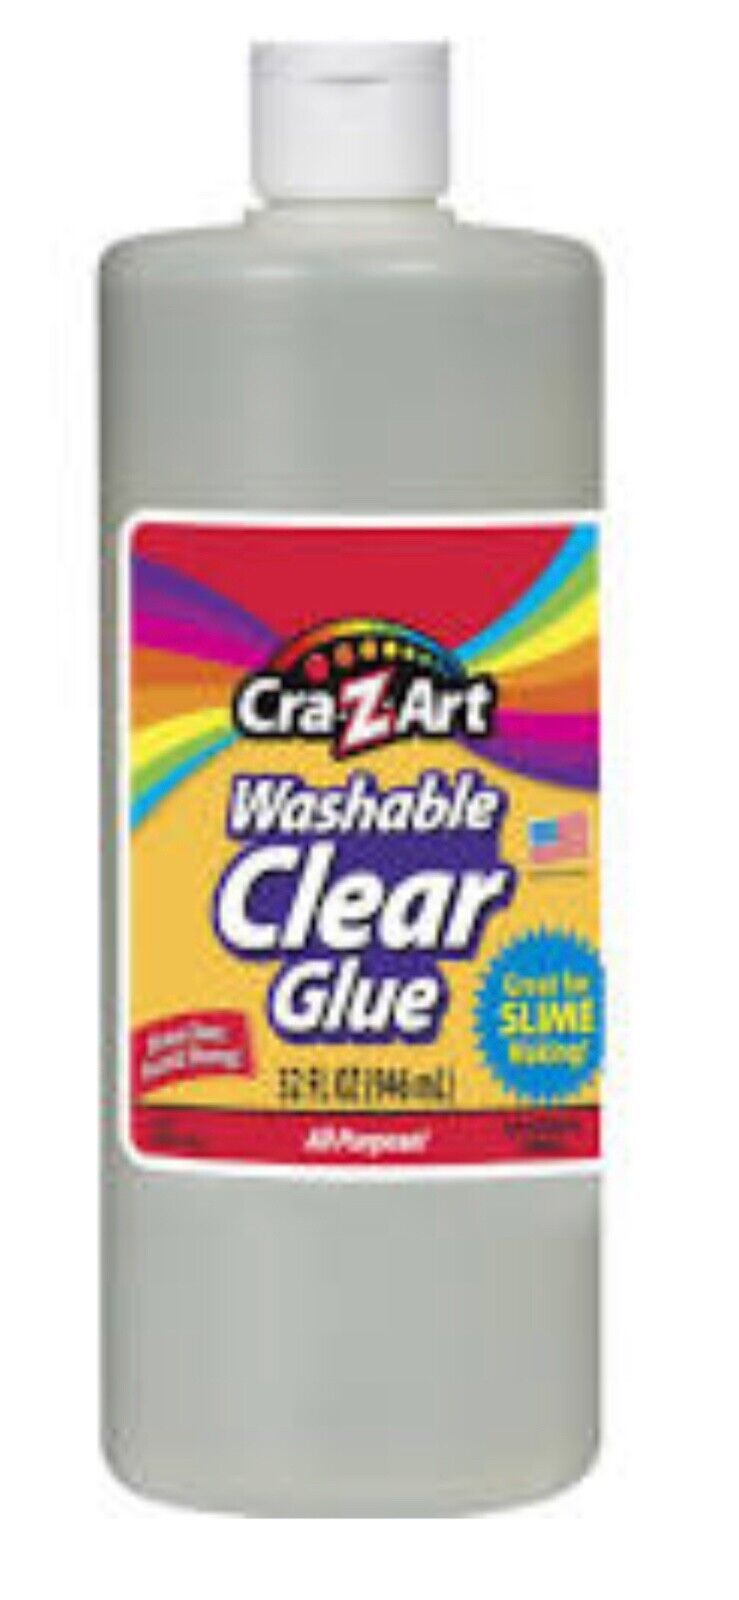 Elmer's Glitter Glue 4 Pack - 6 oz Bottles and 50 similar items